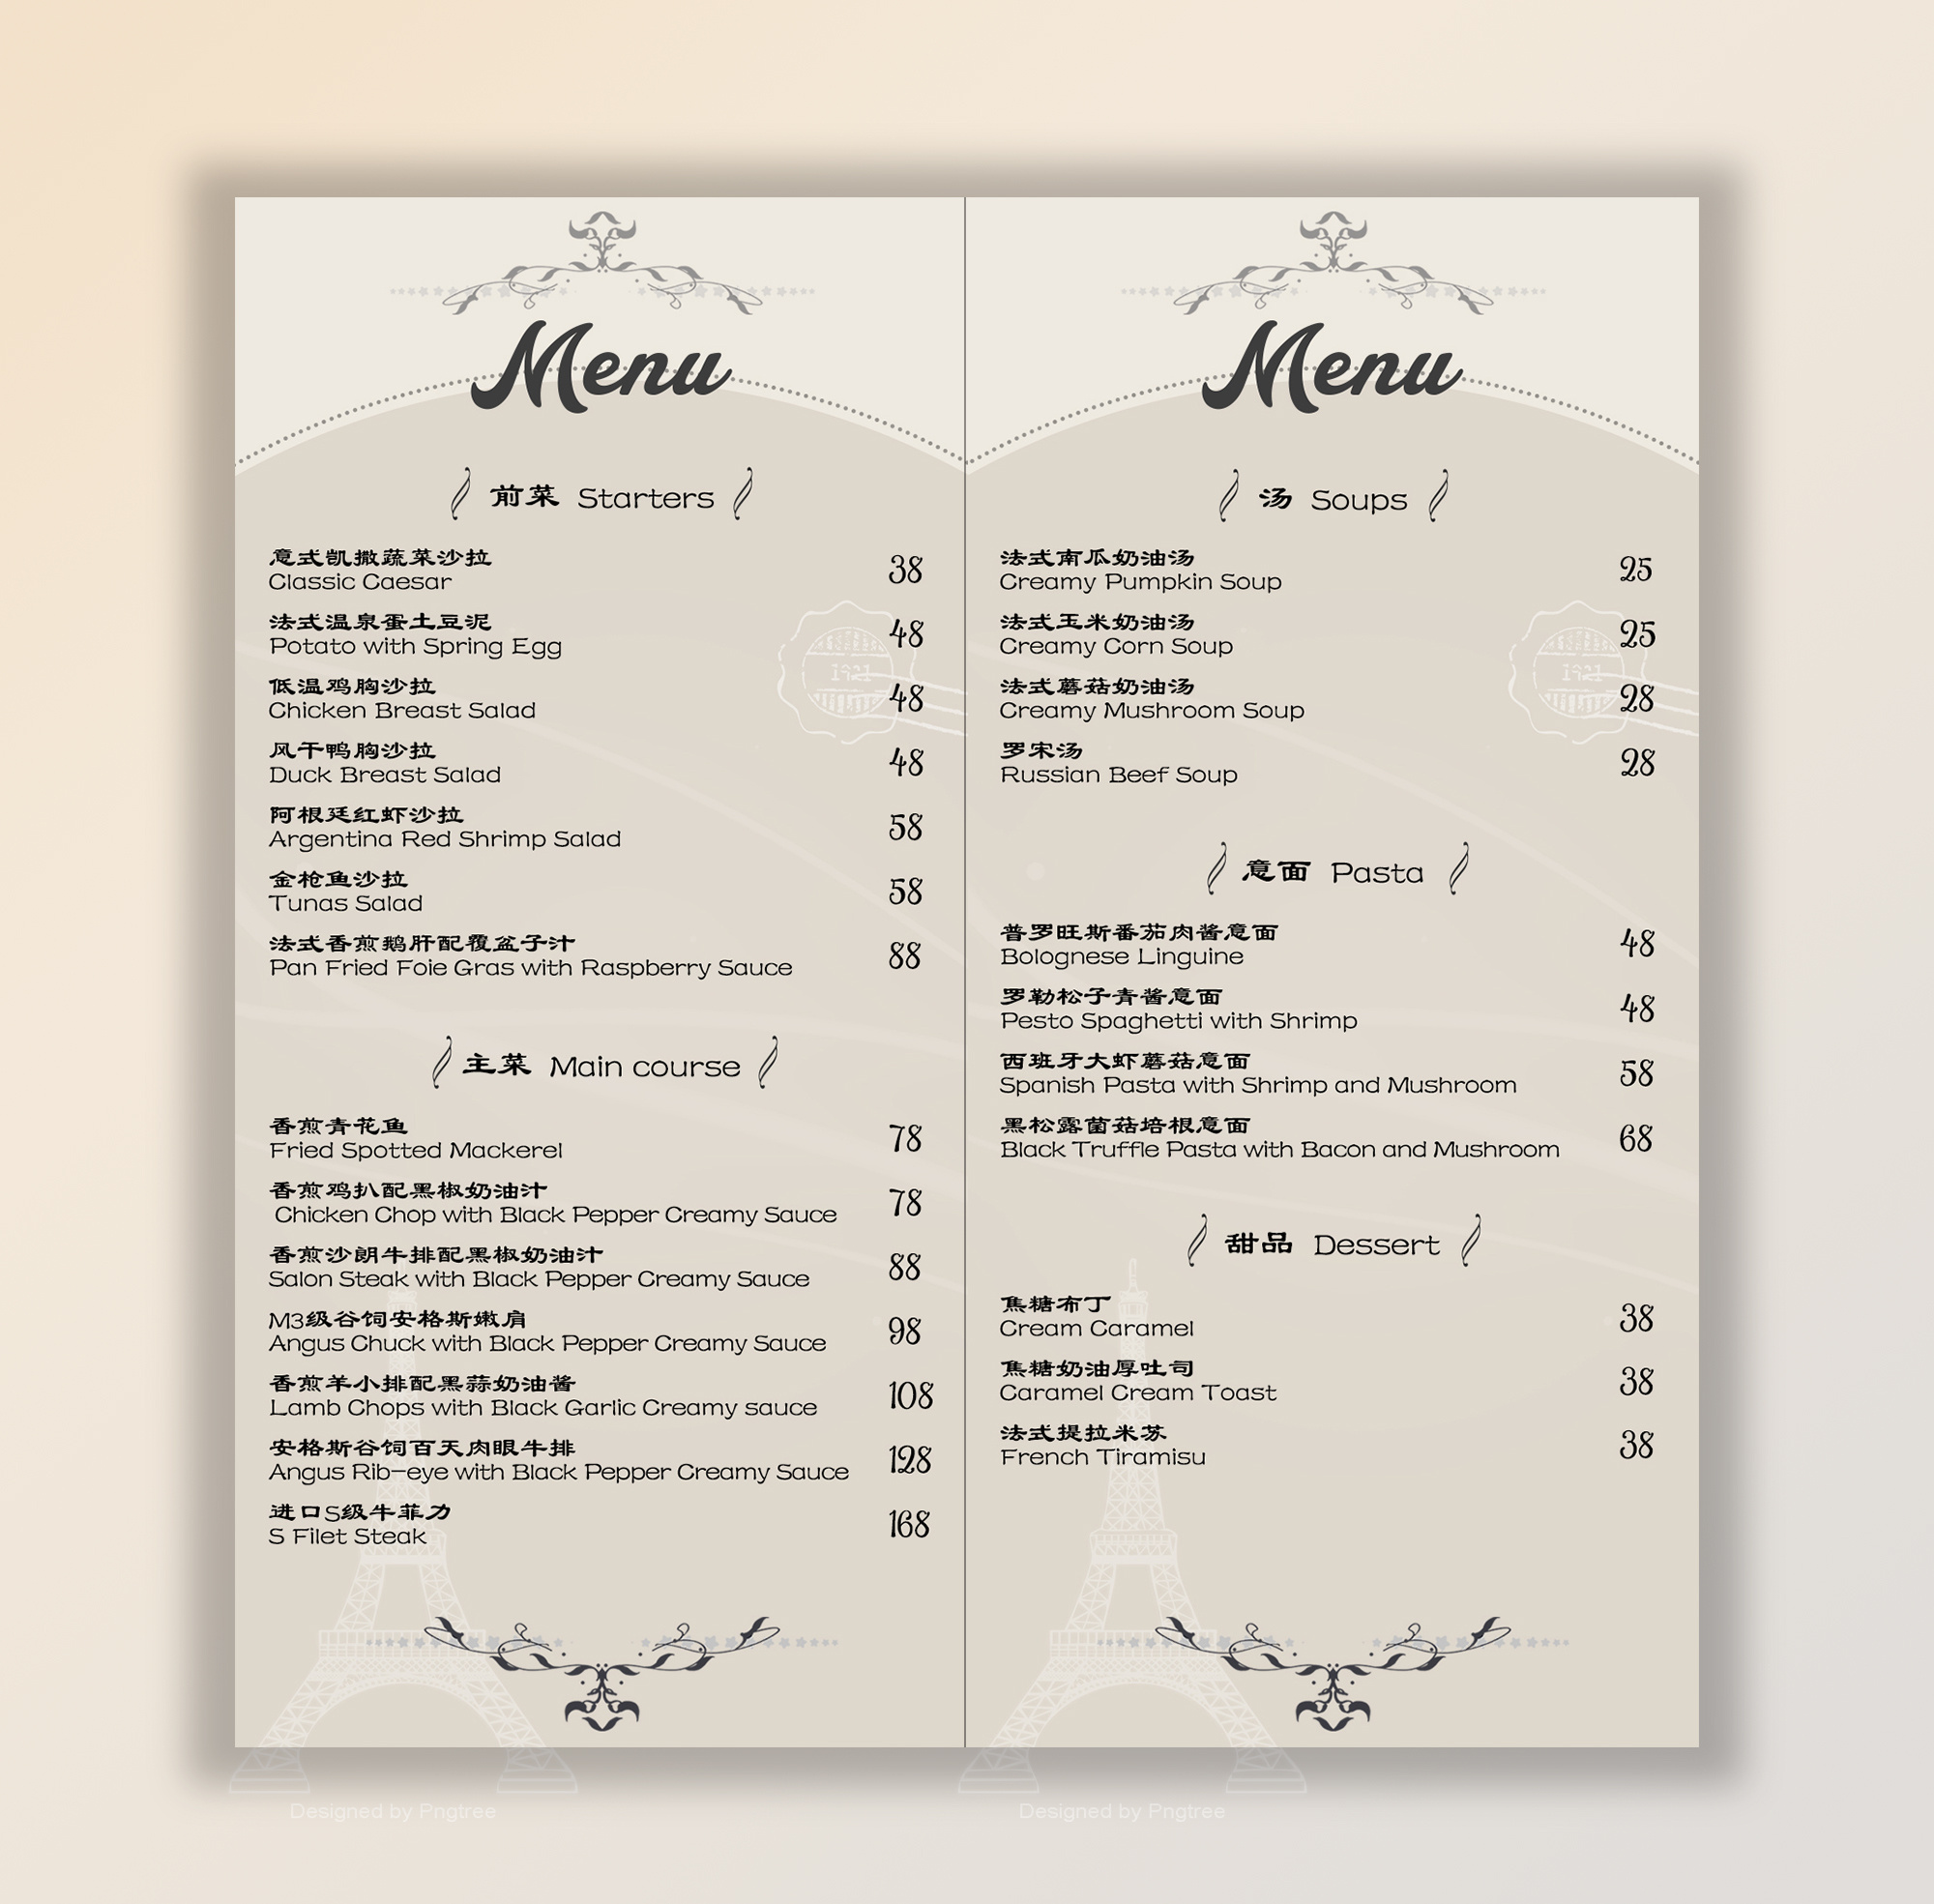 寿司店菜单点餐牌模板免费下载 _广告设计图片设计素材_【包图网】